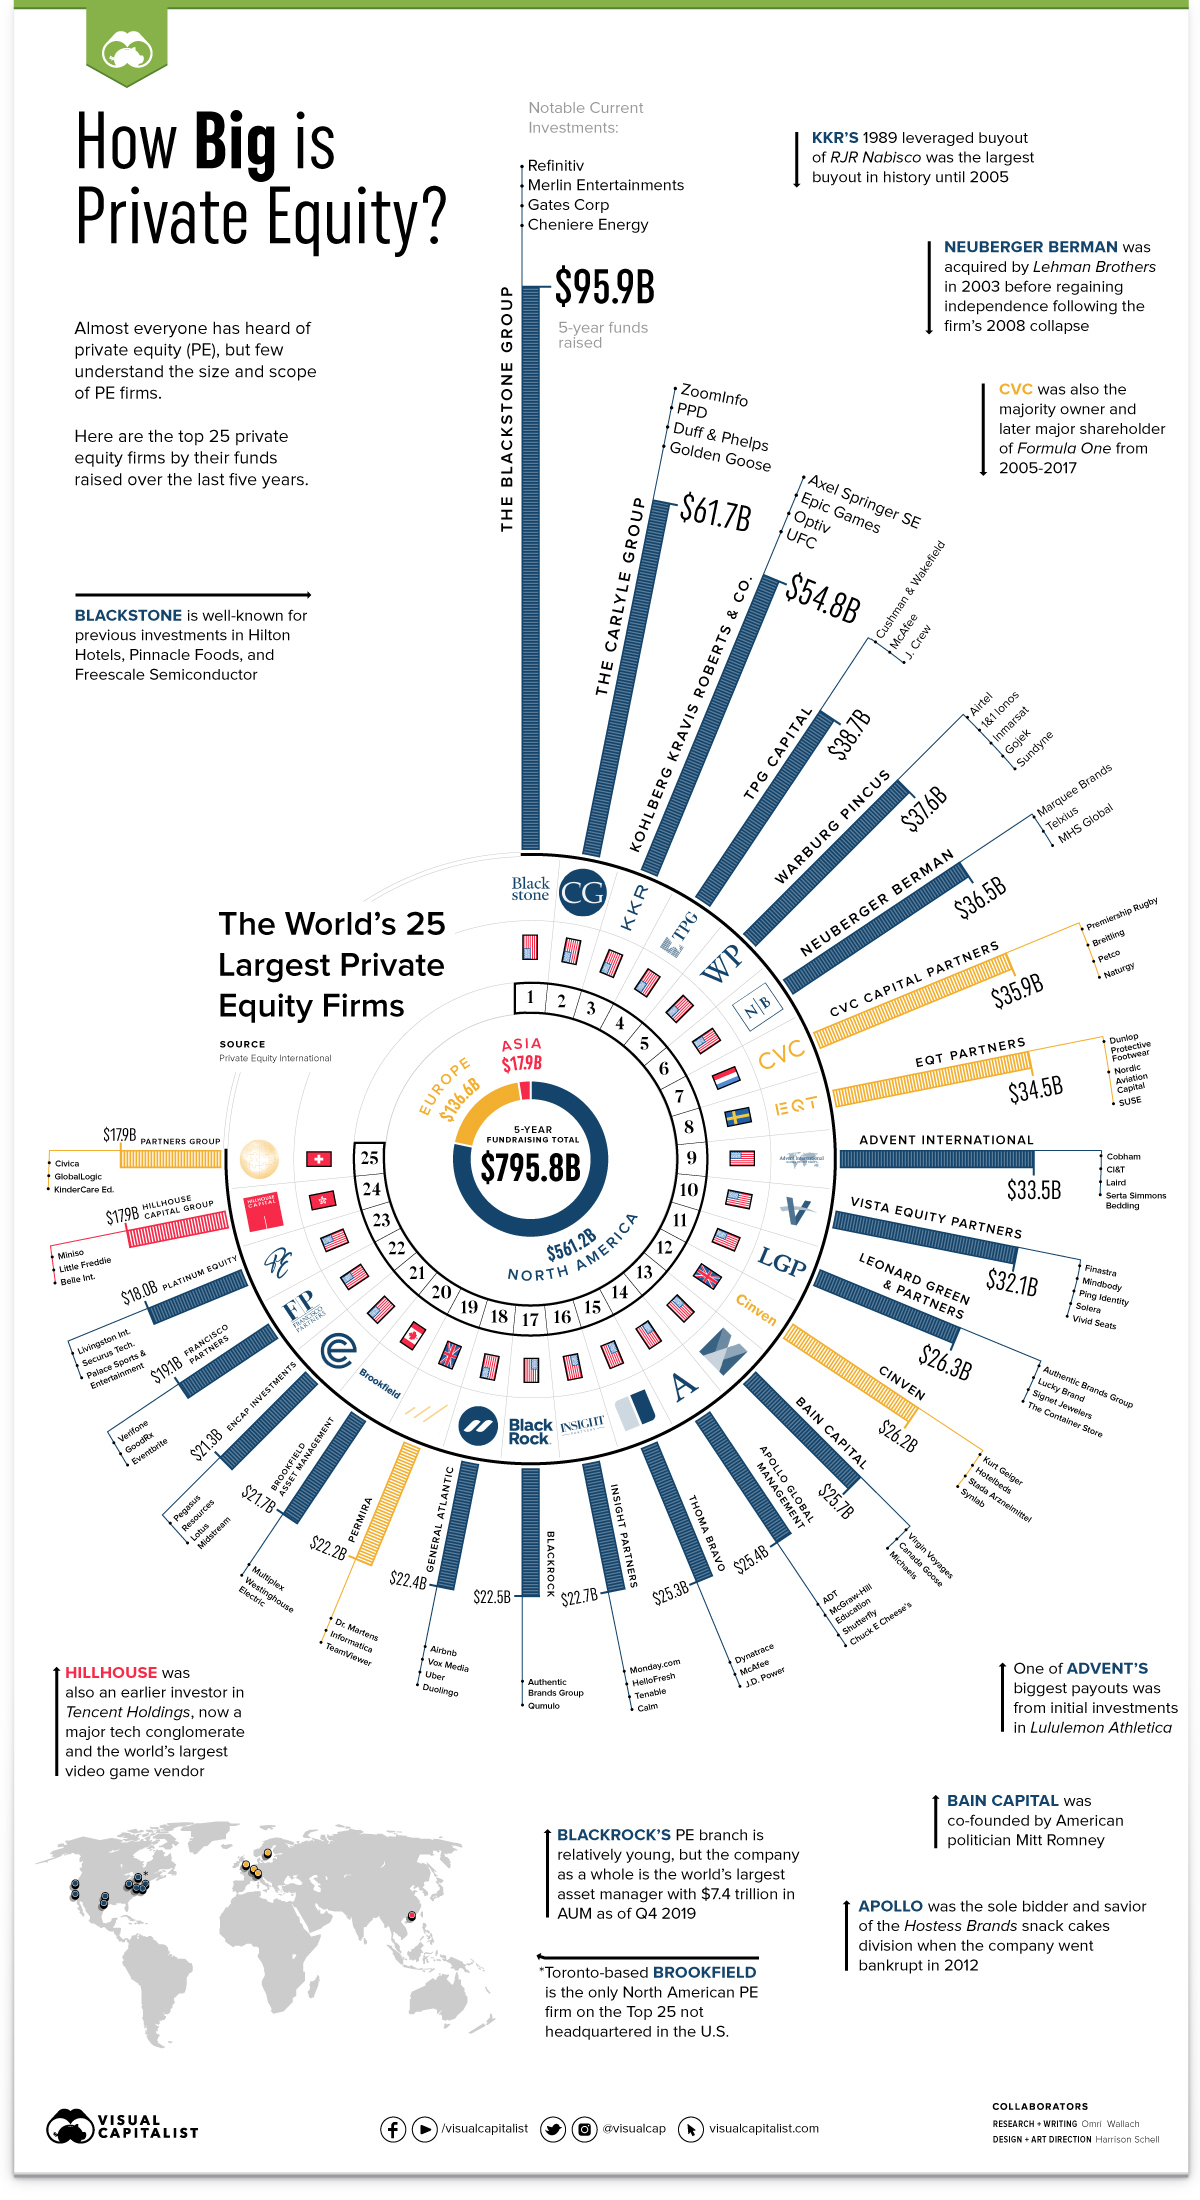 De 25 största private equity-företagen i världen